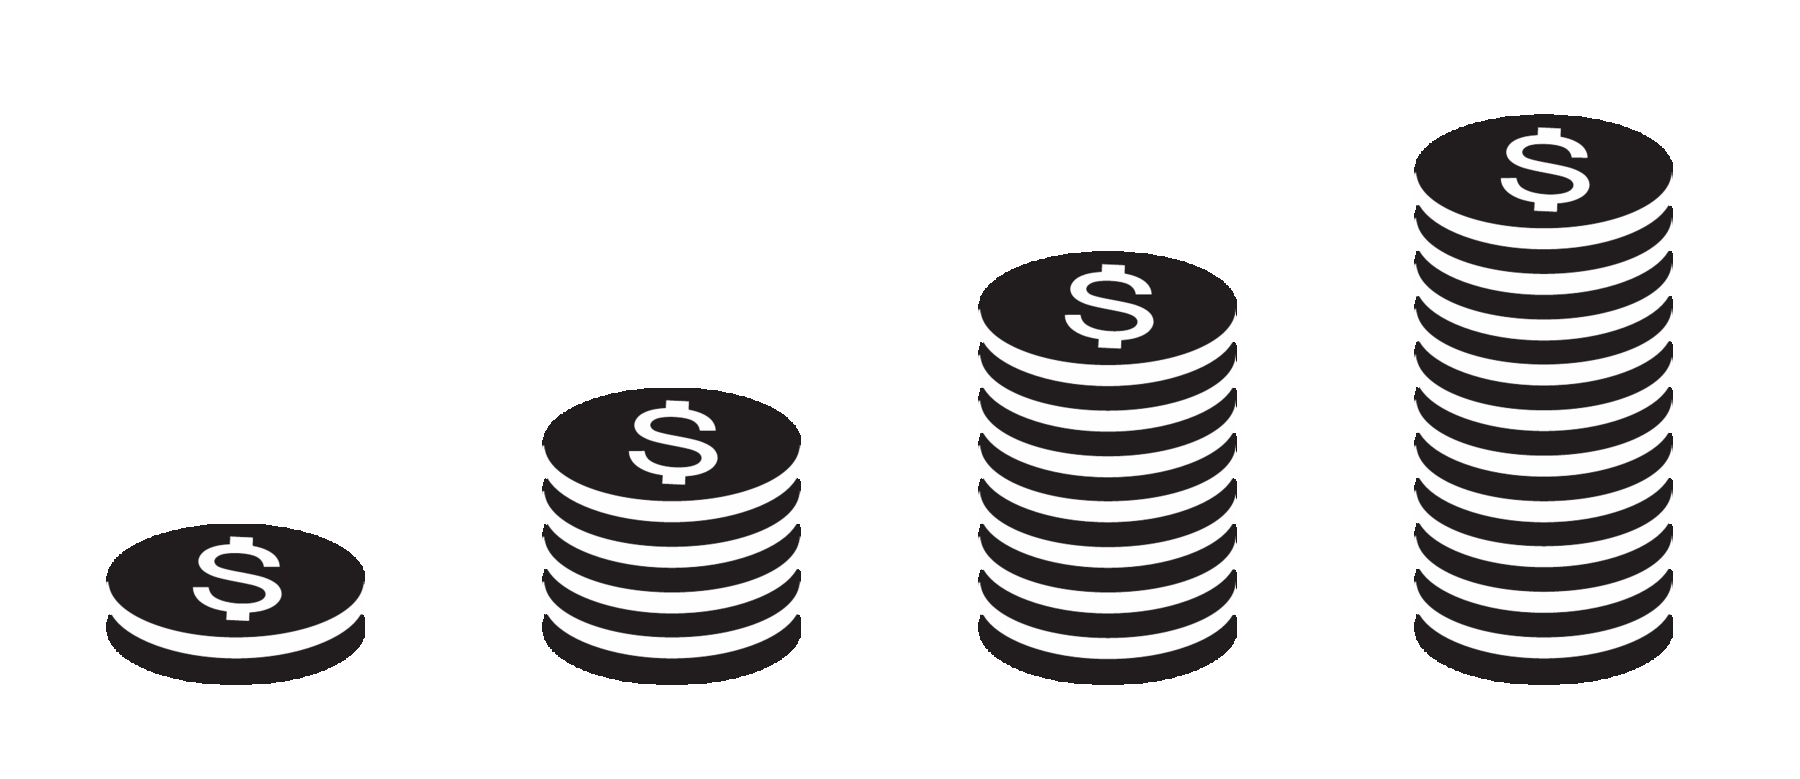 Ilustração em preto e branco. Três pilhas de moedas posicionadas da menor para maior.